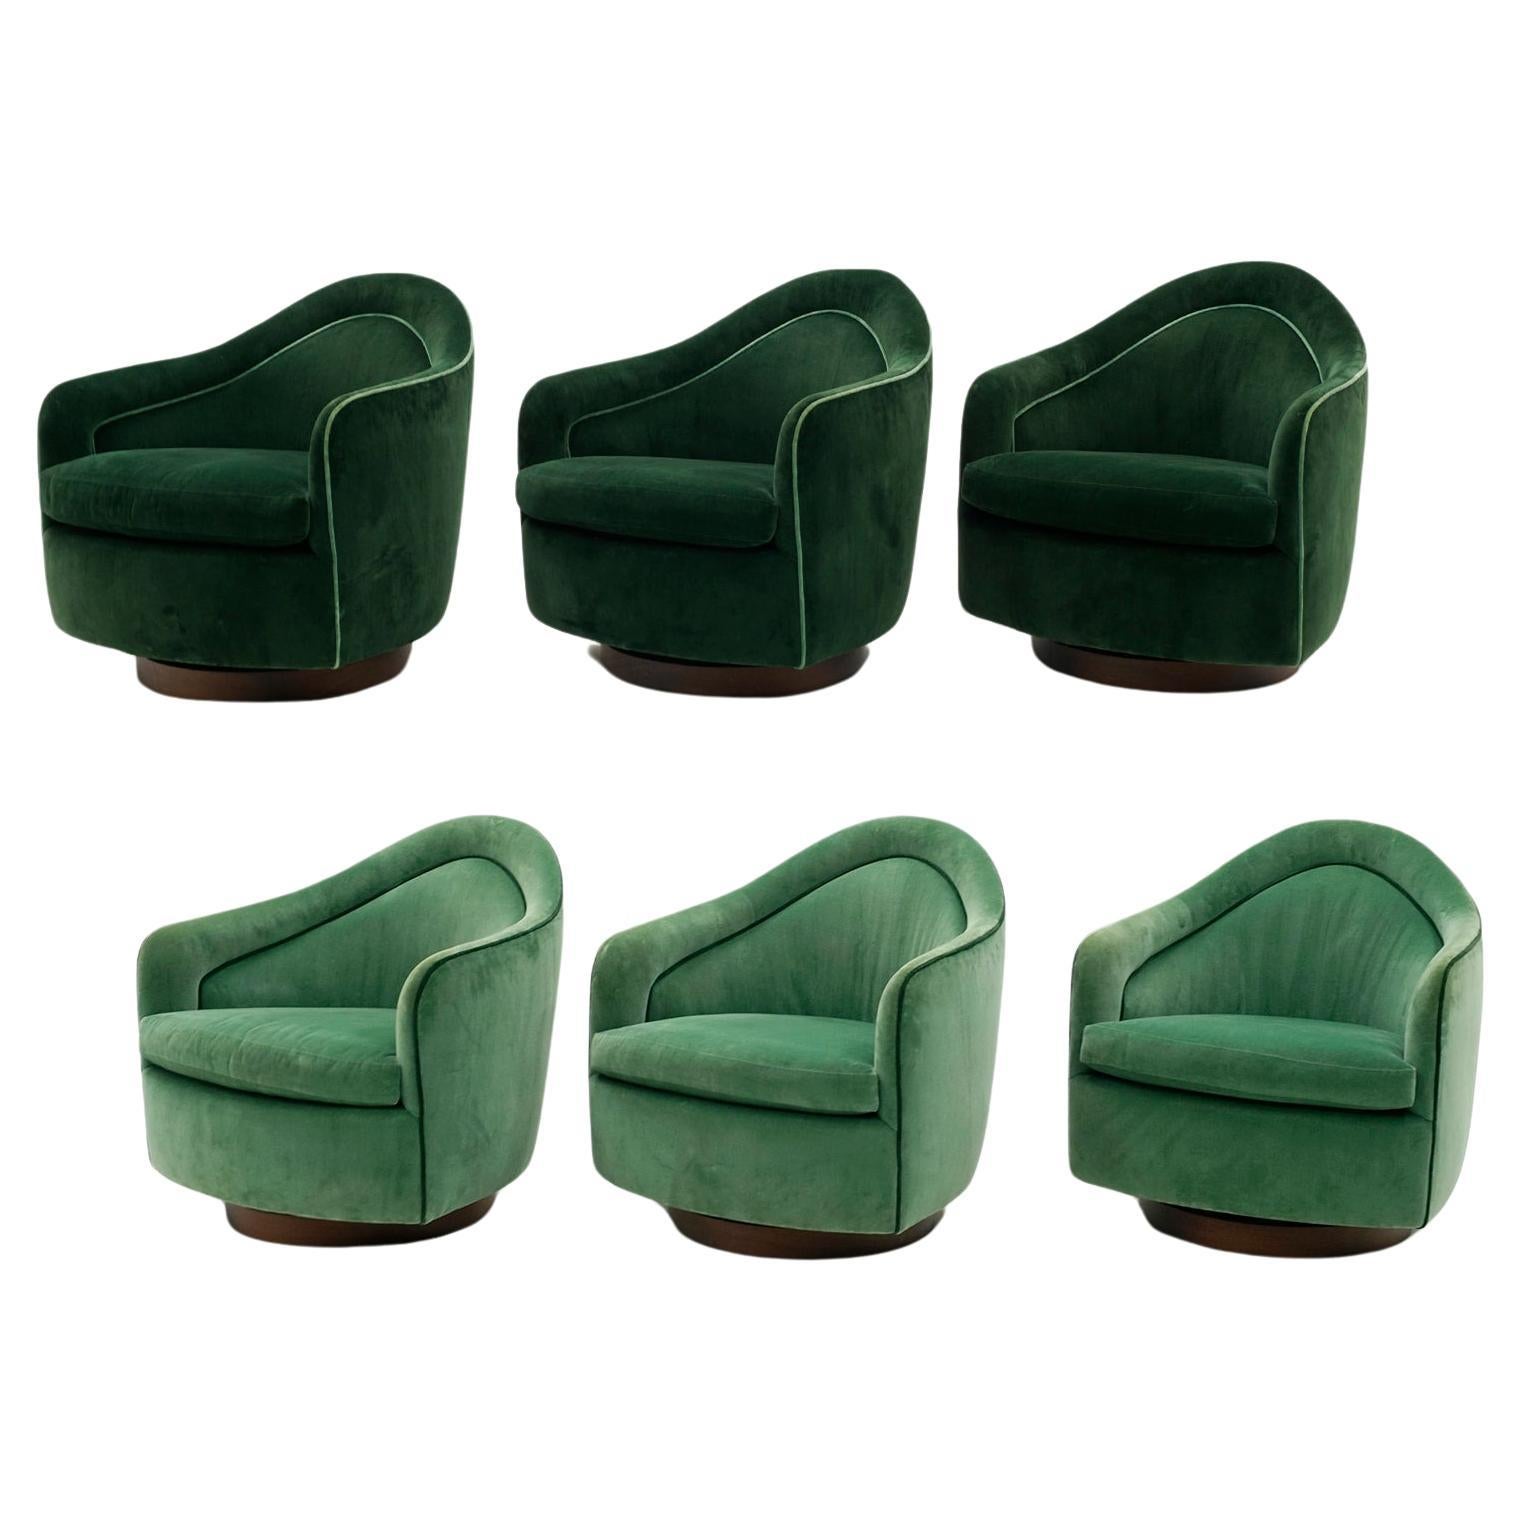 Sechs Milo Baughman. Hochlehnige, neigbare und drehbare Loungesessel. New Green Polstermöbel.